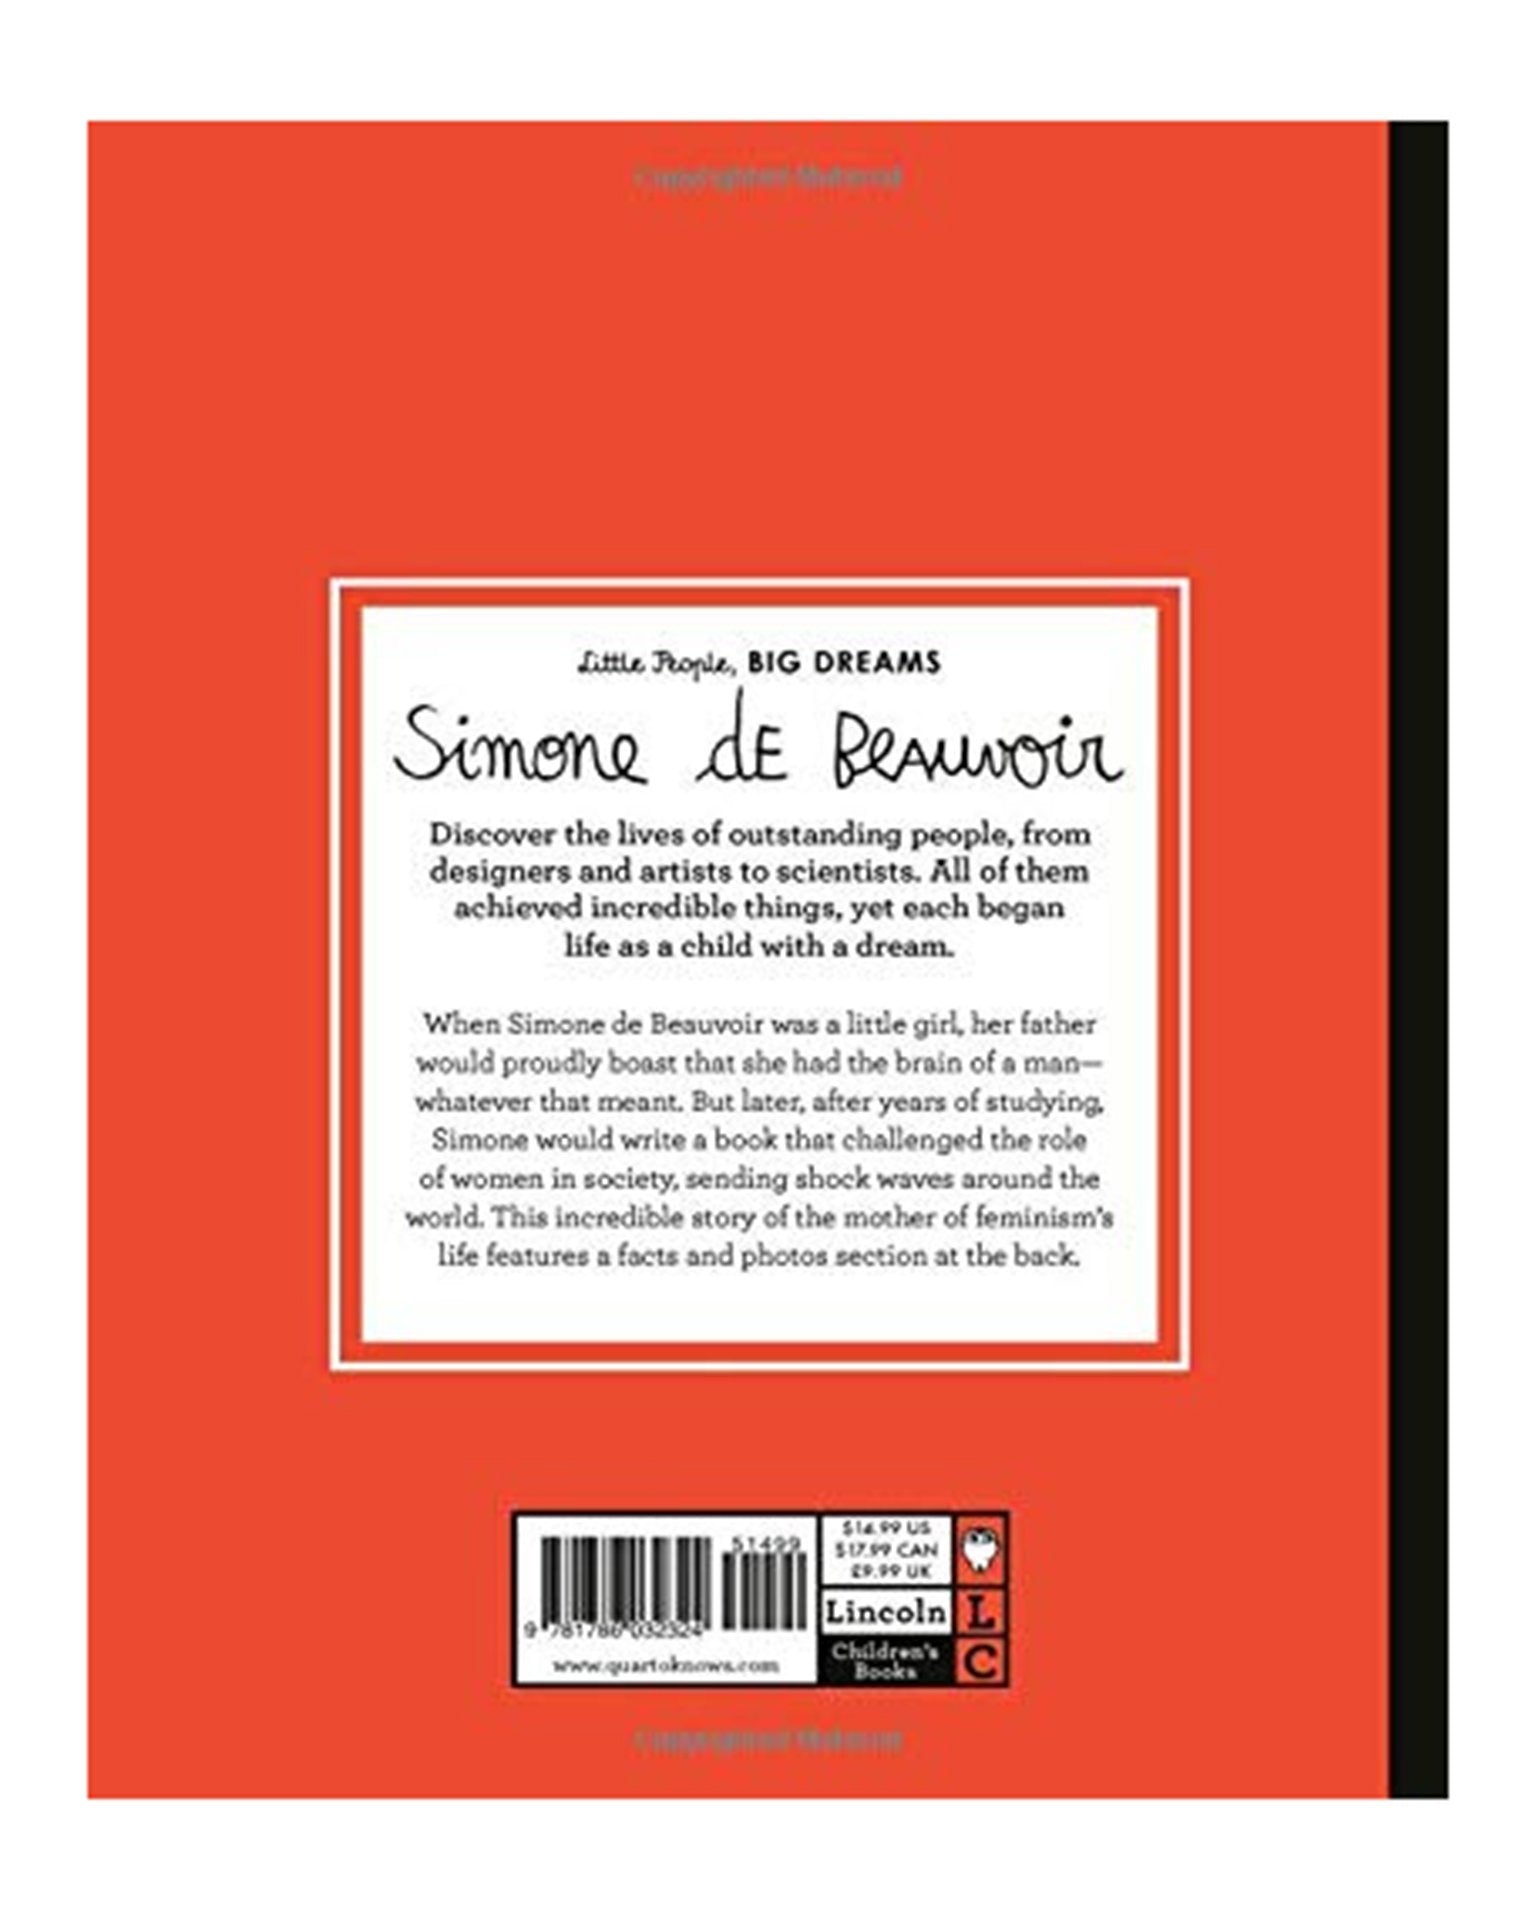 Little quarto publishing group play little people, big dreams: simone de beauvoir